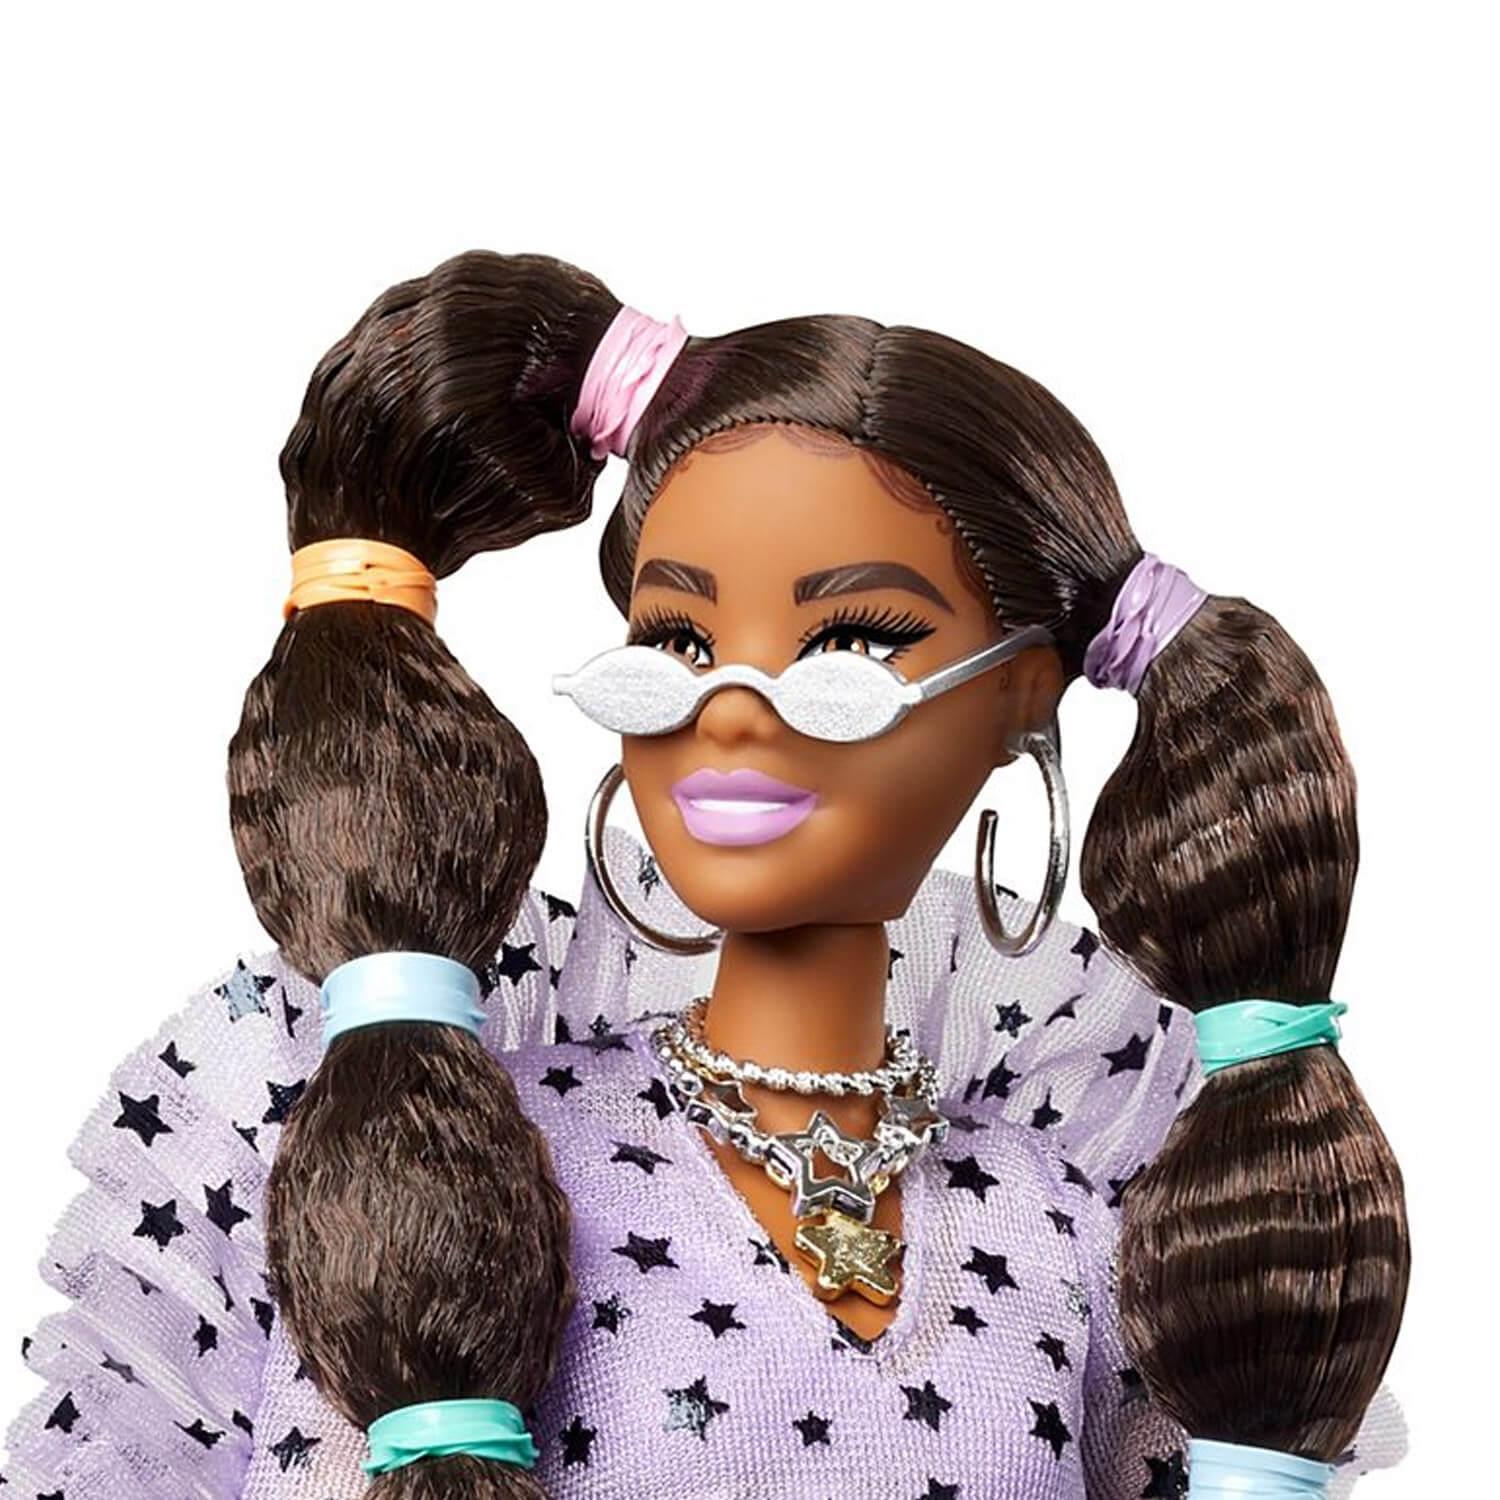 Poupée Mattel Barbie - Ma première Barbie Brune - Poupée - 3 ans